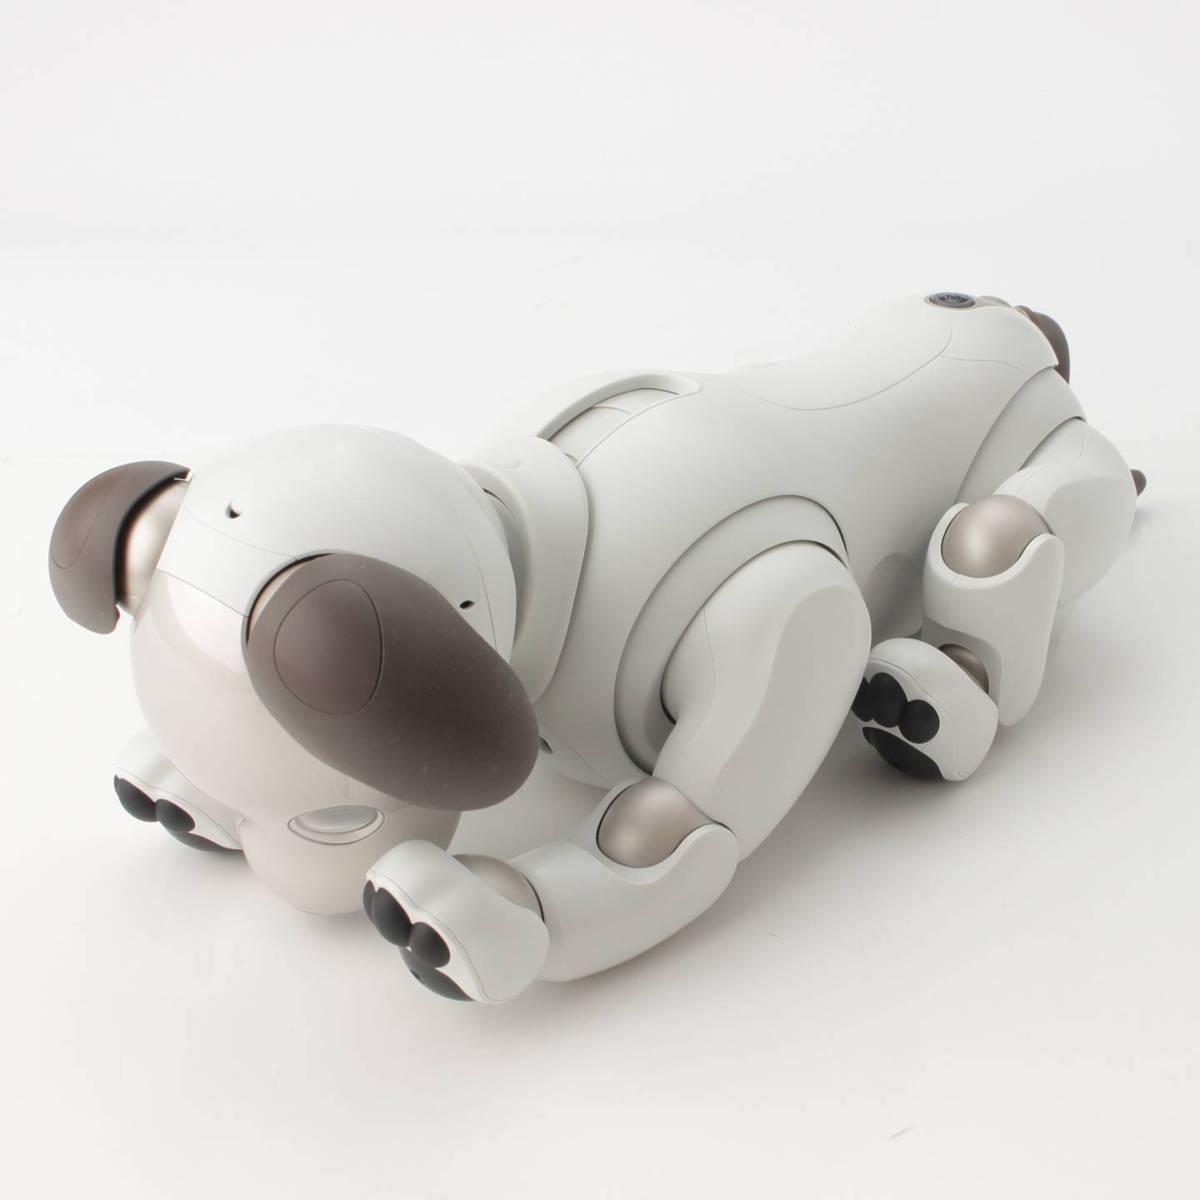 SONY アイボ aibo 犬型 ホワイト ERS-1000 ロボット ペット バーチャル